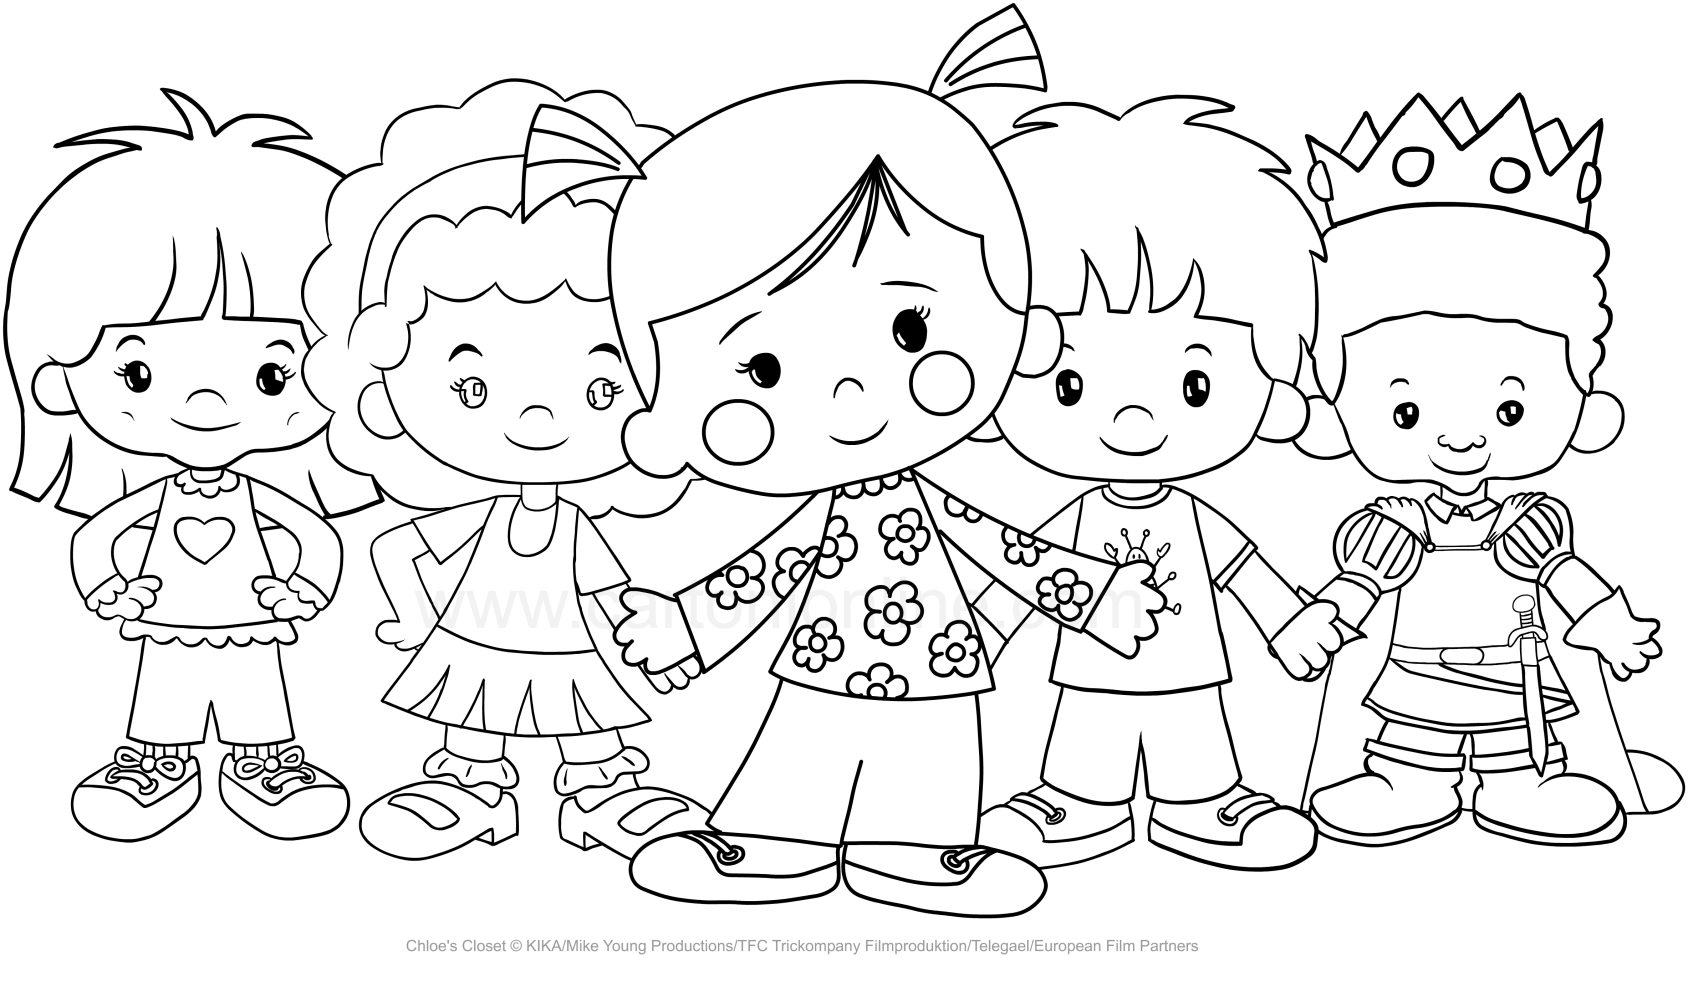 Chlo '와 그녀의 친구들 (Chlo'의 옷장) 그림을 인쇄하고 색칠하기